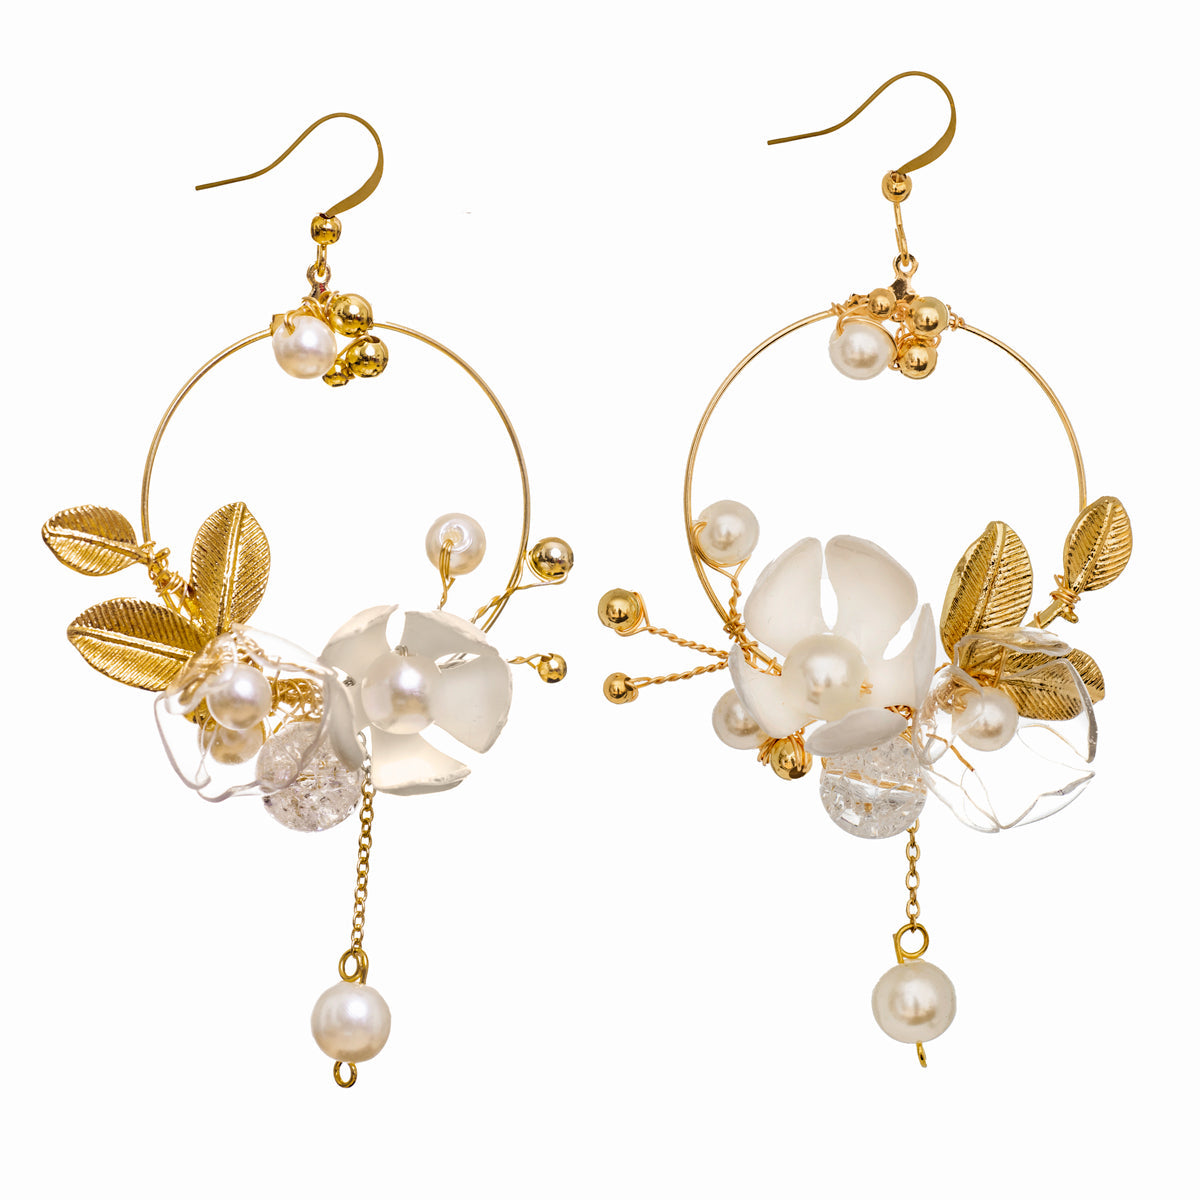 Florale Jugendstil-Ohrringe - Floral Art Nouveau Earrings-0